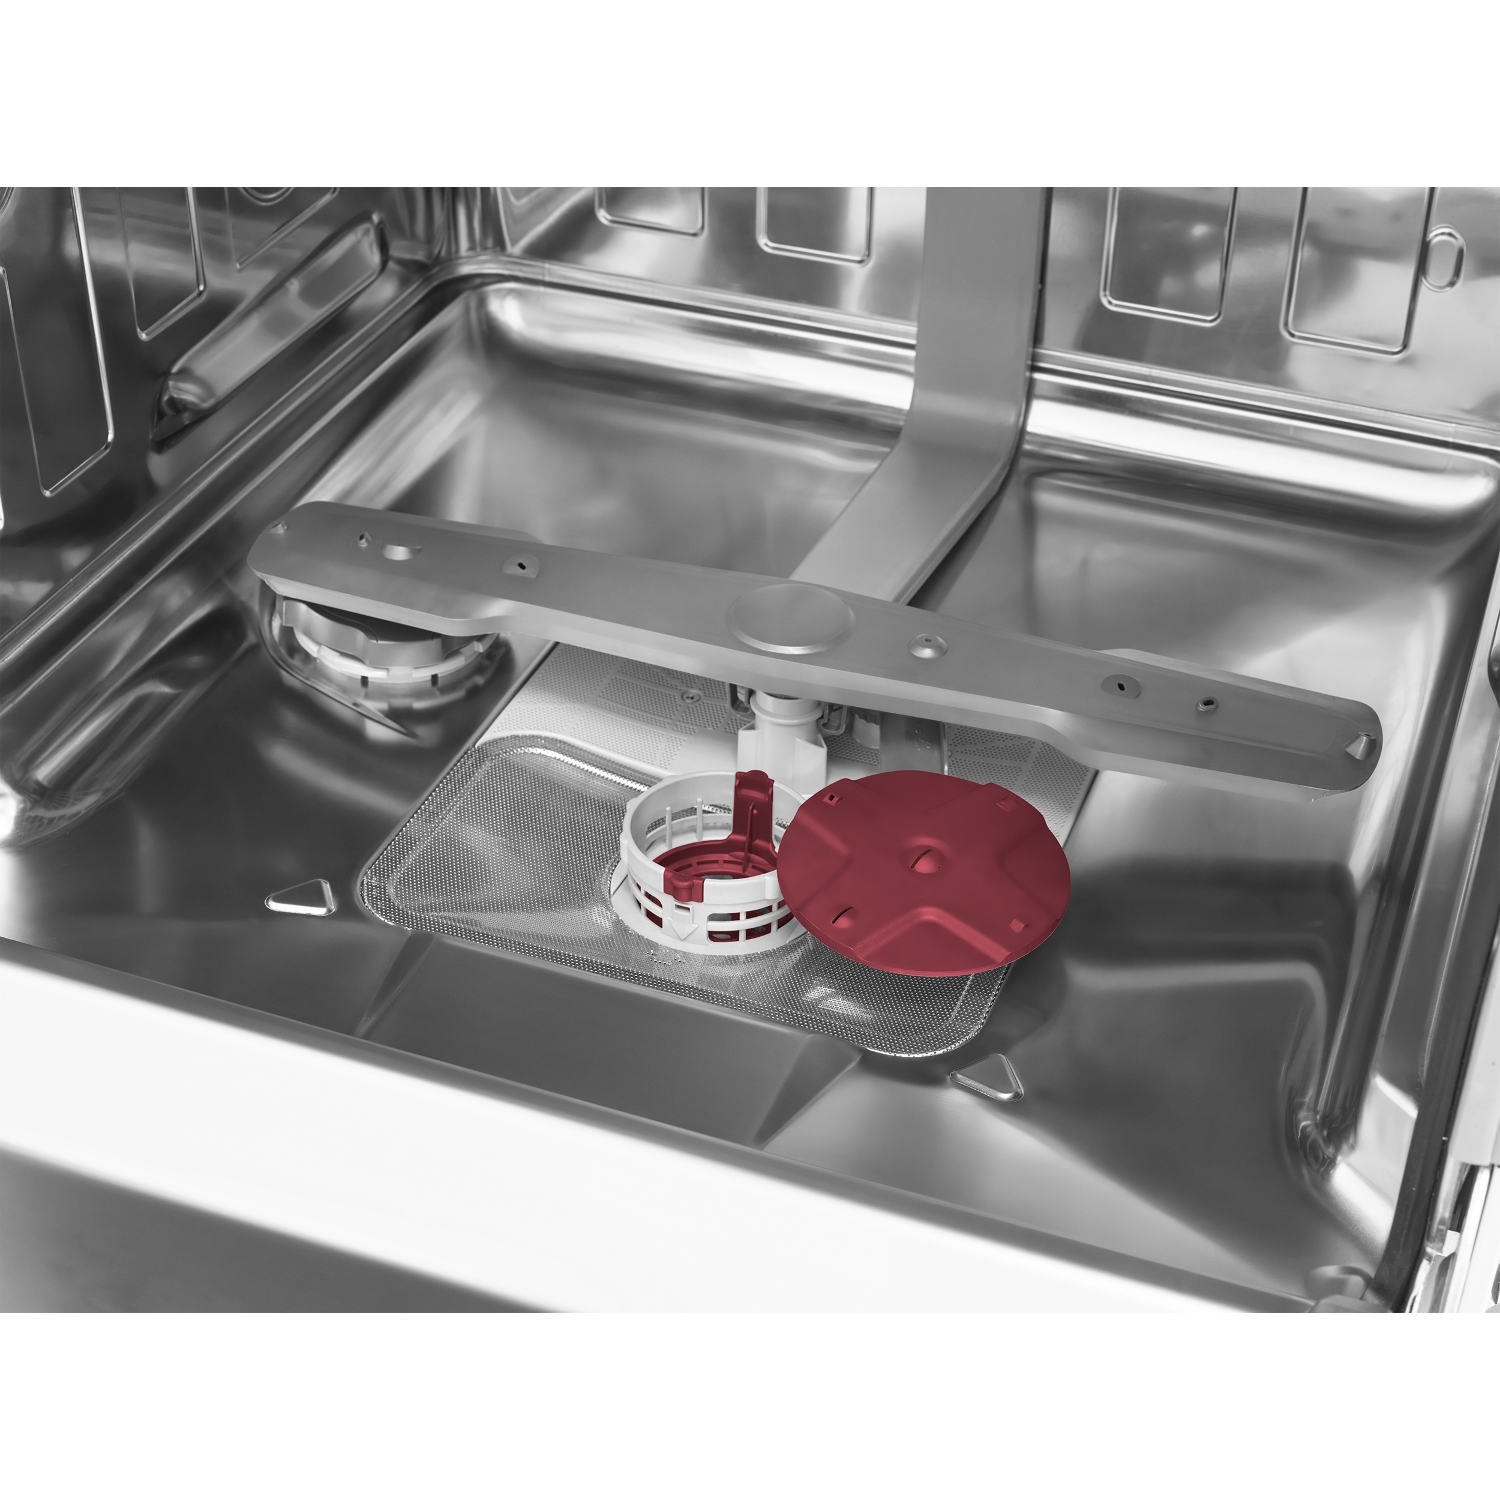 Blomberg LDV42244 Integrated Full Size Dishwasher - 14 Place Settings - 3